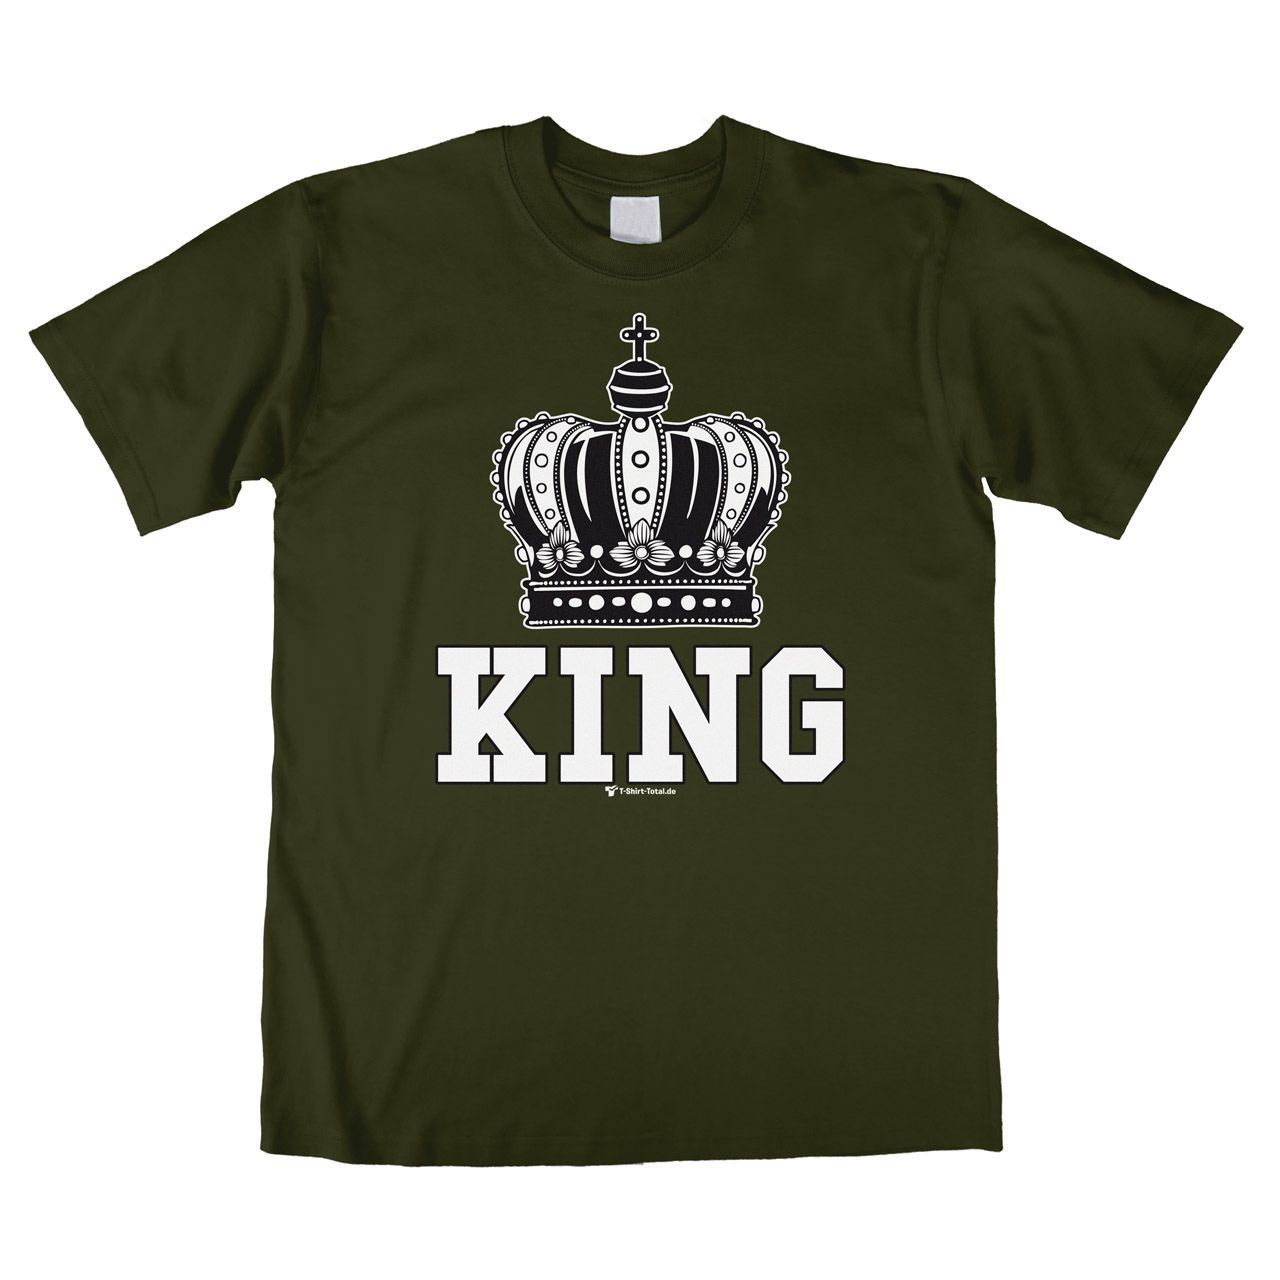 King Unisex T-Shirt khaki Large